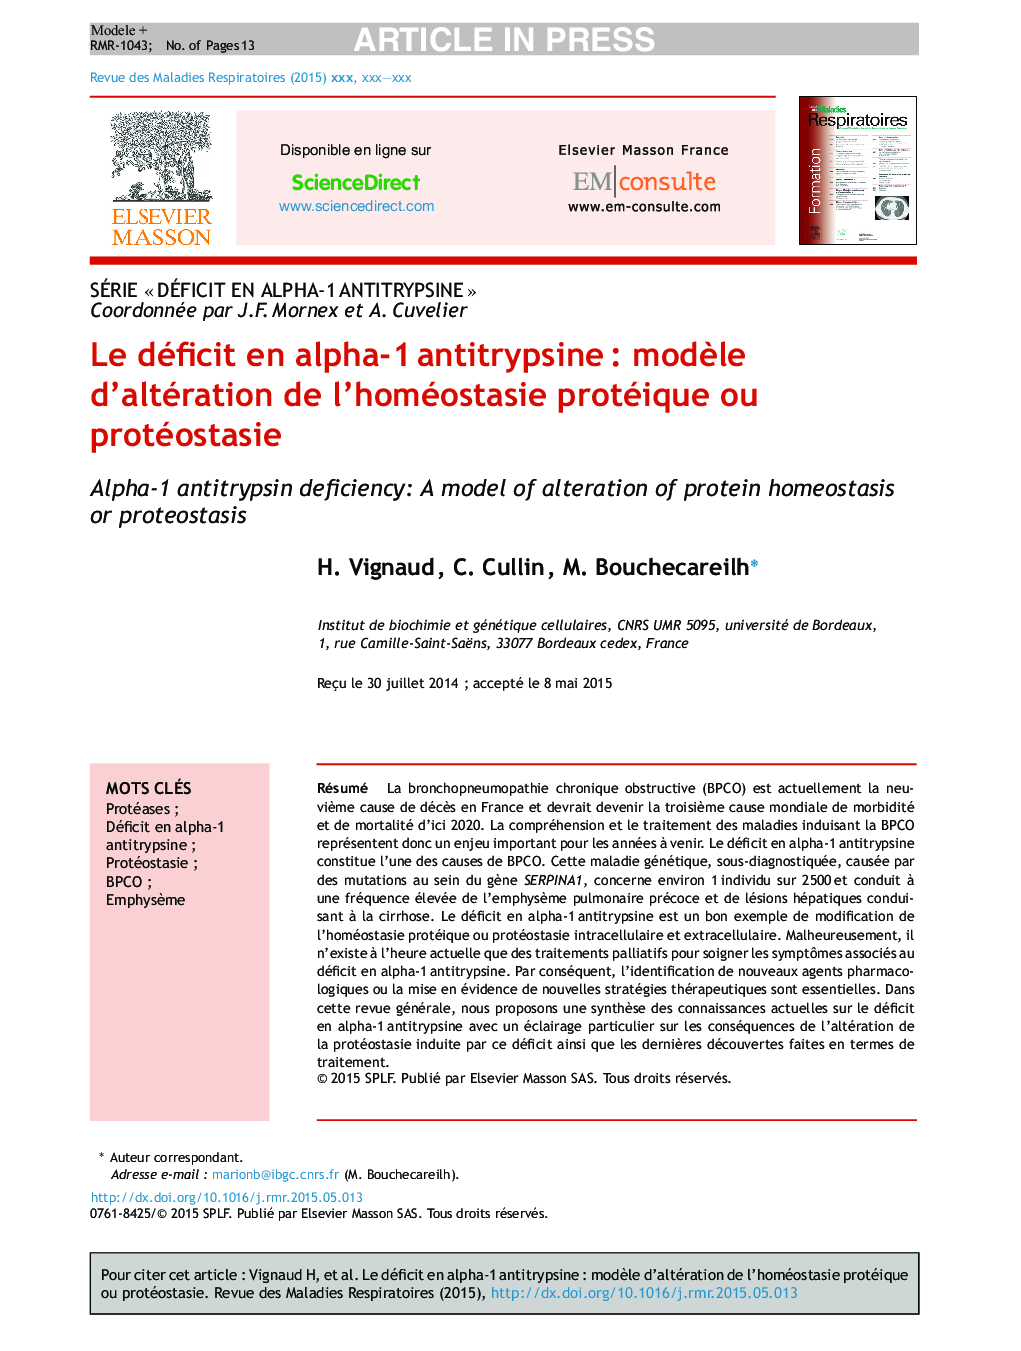 Le déficit en alpha-1Â antitrypsineÂ : modÃ¨le d'altération de l'homéostasie protéique ou protéostasie